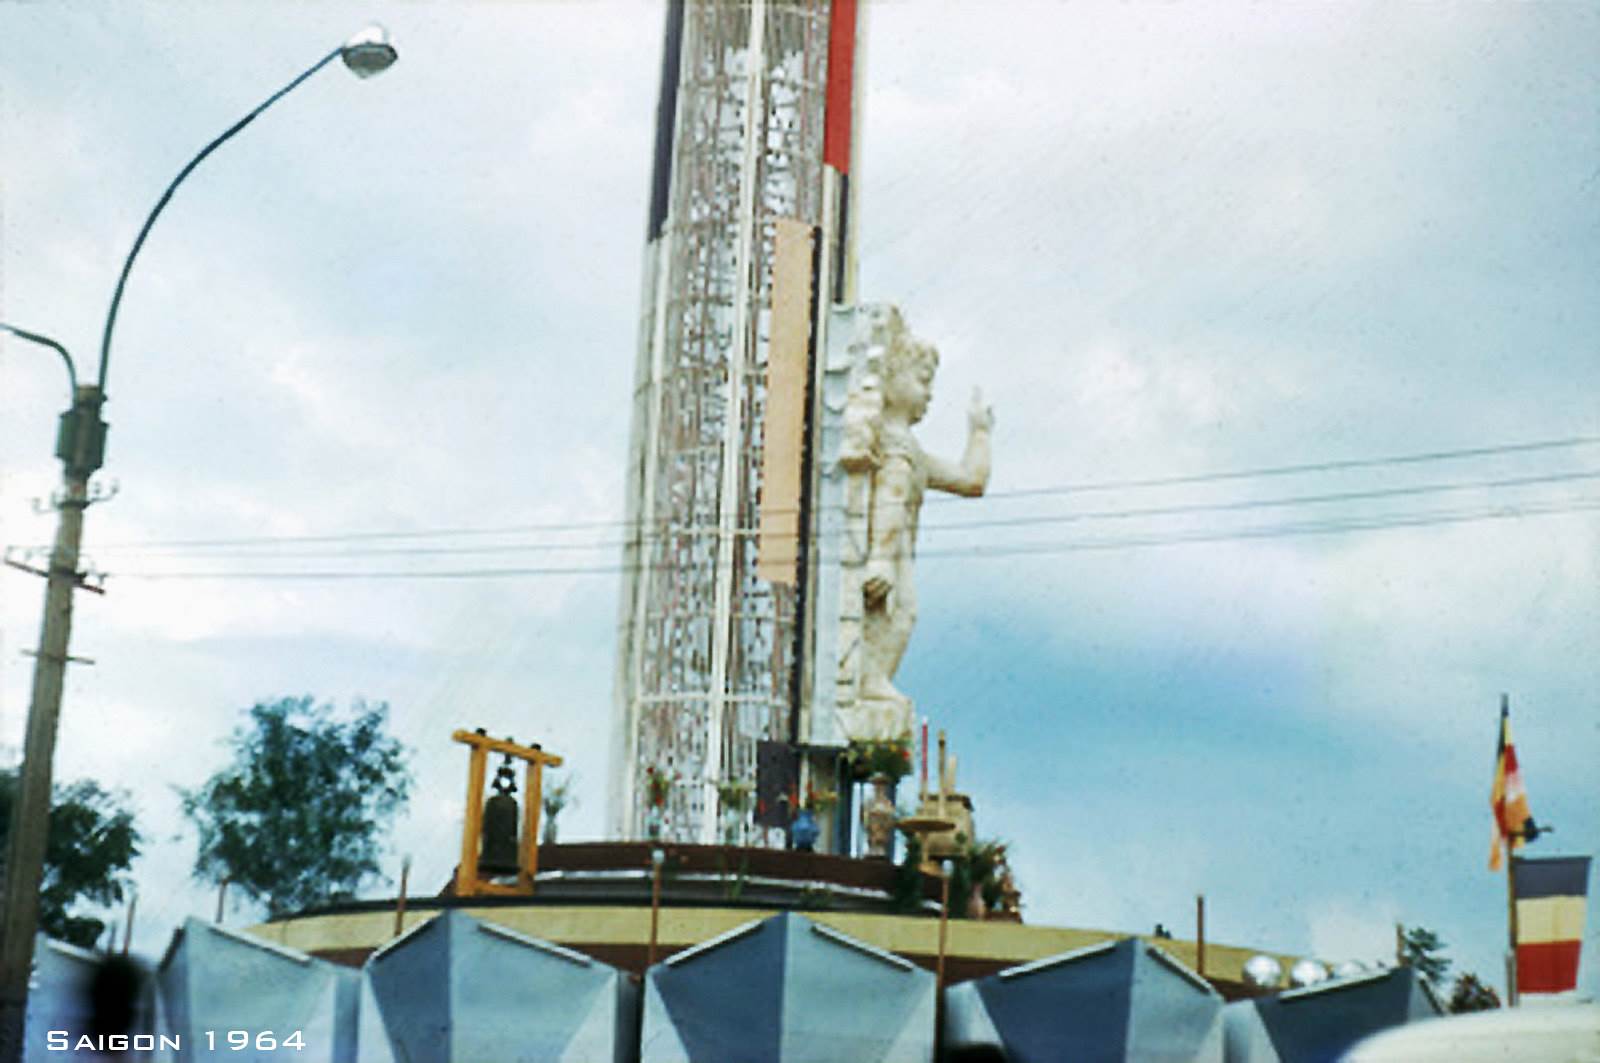 SAIGON 1964 - Lễ đài lễ Phật Đản trên Bến Bạch Đằng, cuối đường Nguyễn Huệ